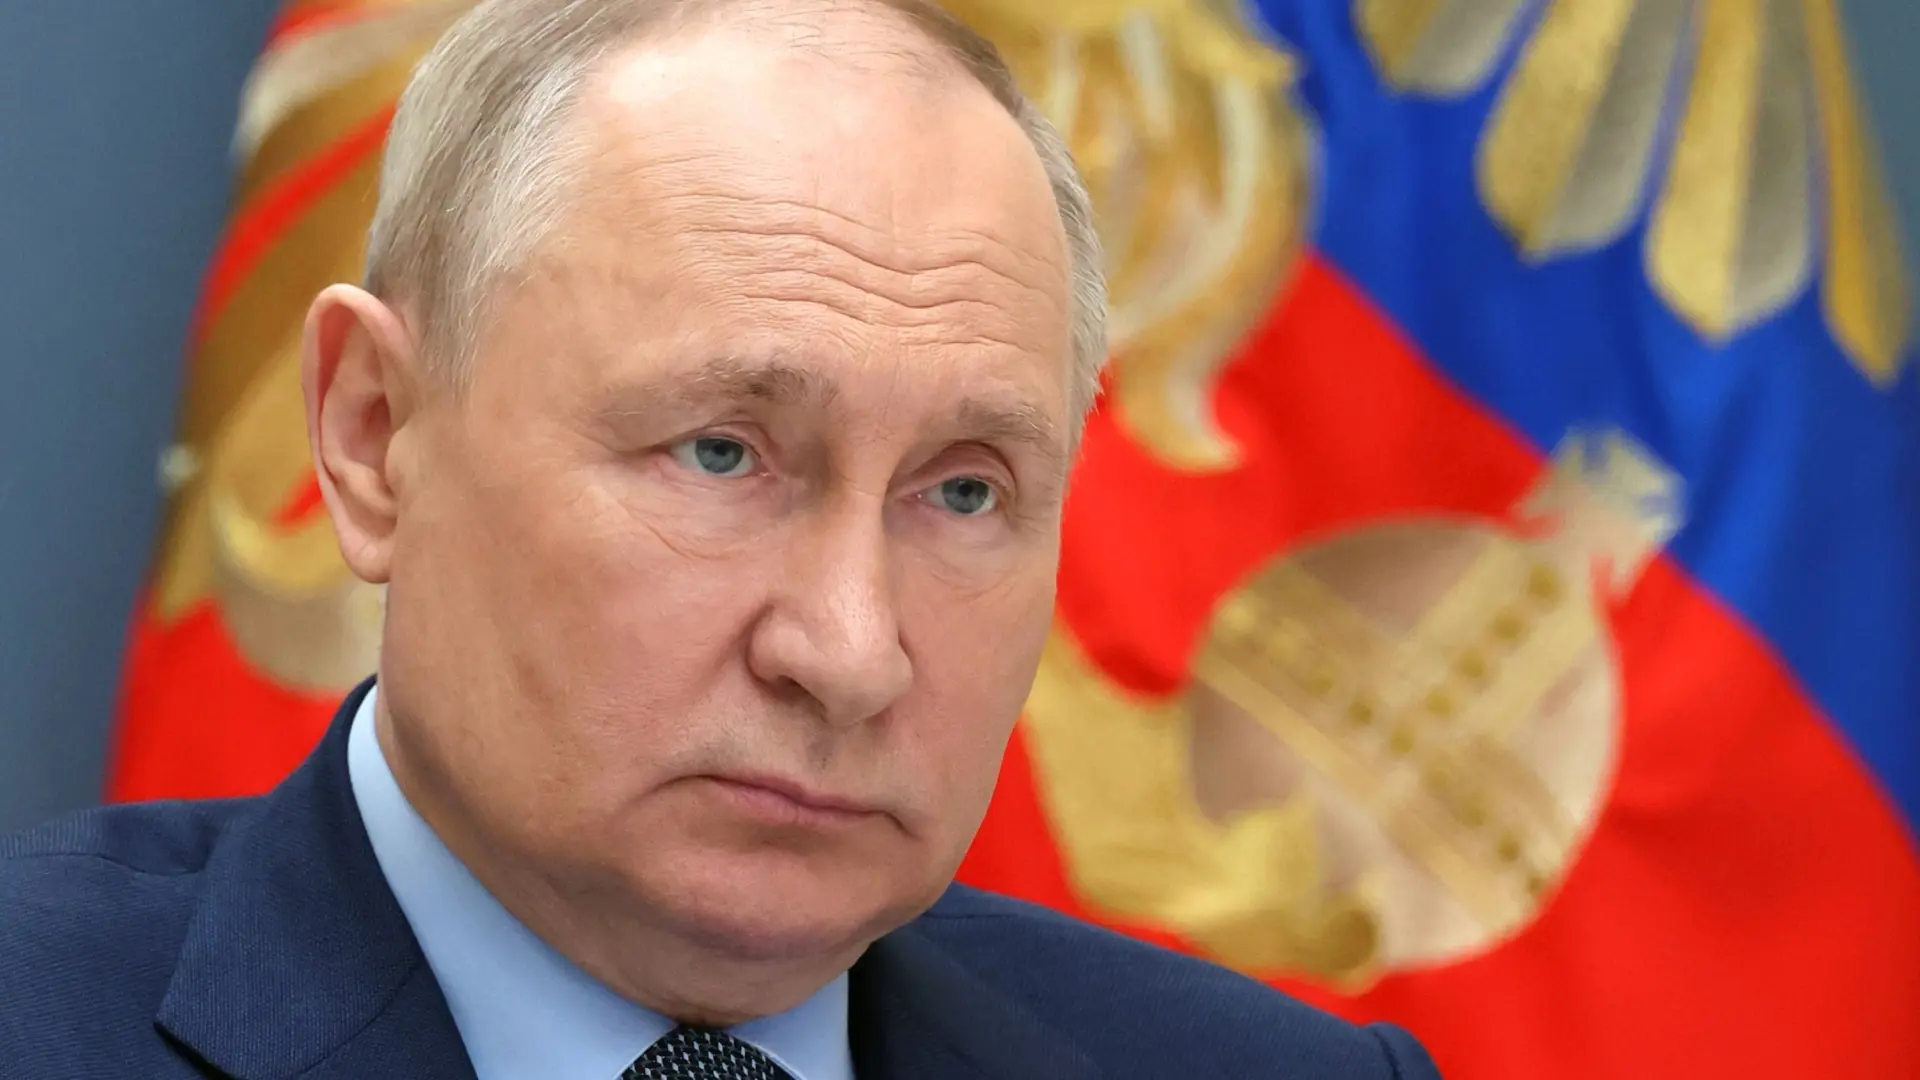 Vladimir Putin anunció que se postulará para un nuevo mandato presidencial en Rusia.